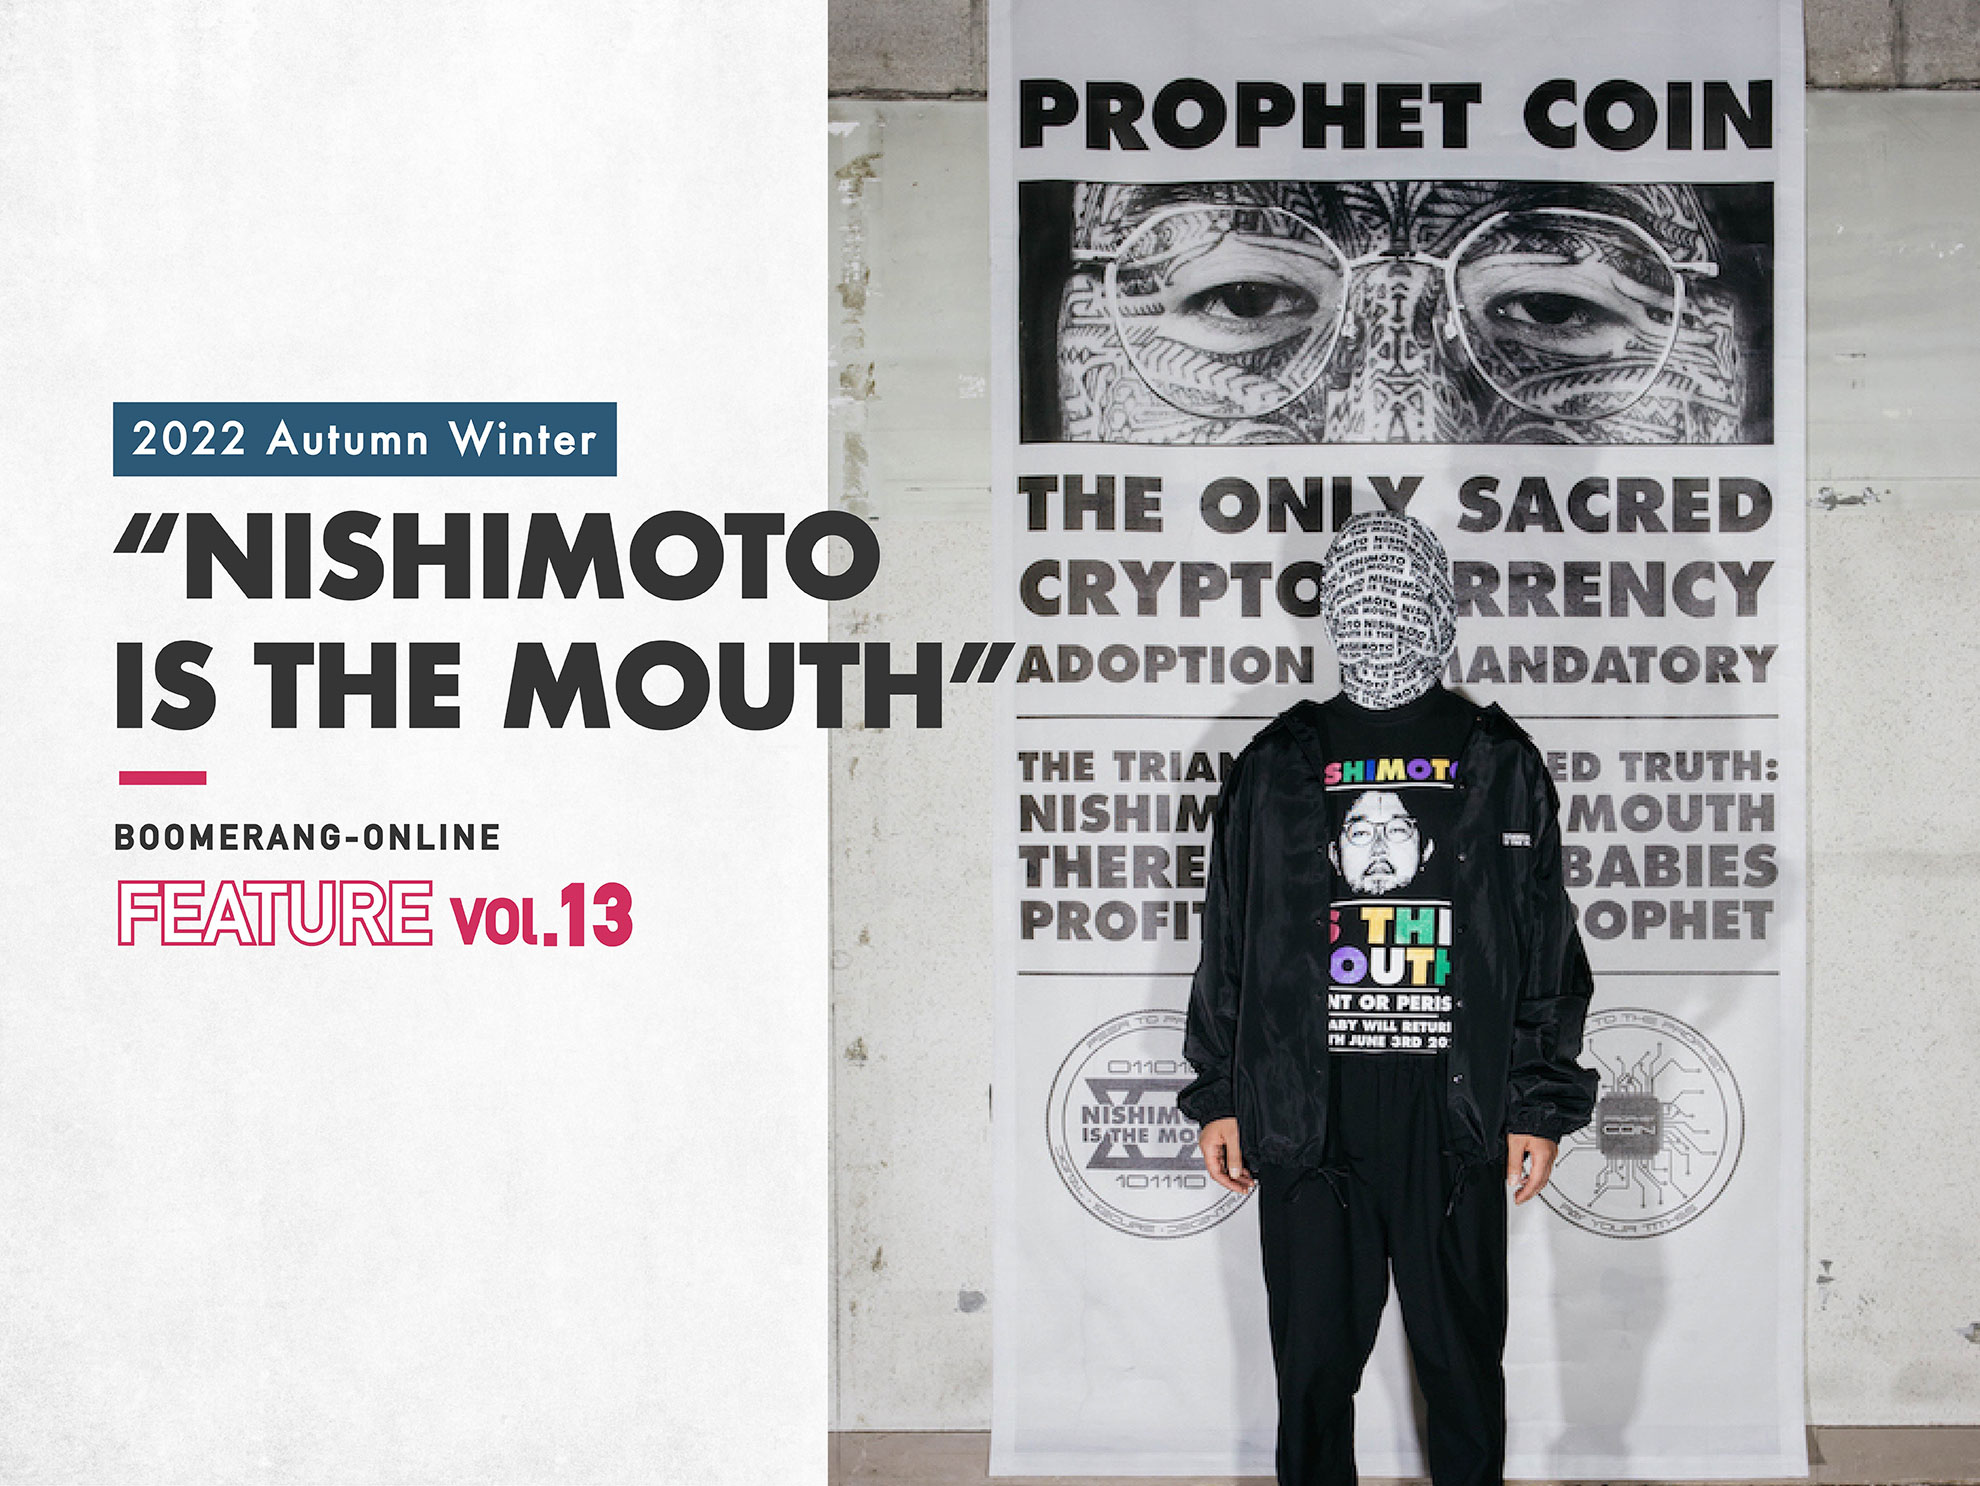 特集 FEATURE Vol.13 / 2022 Autumn Winter “NISHIMOTO IS THE MOUTH”